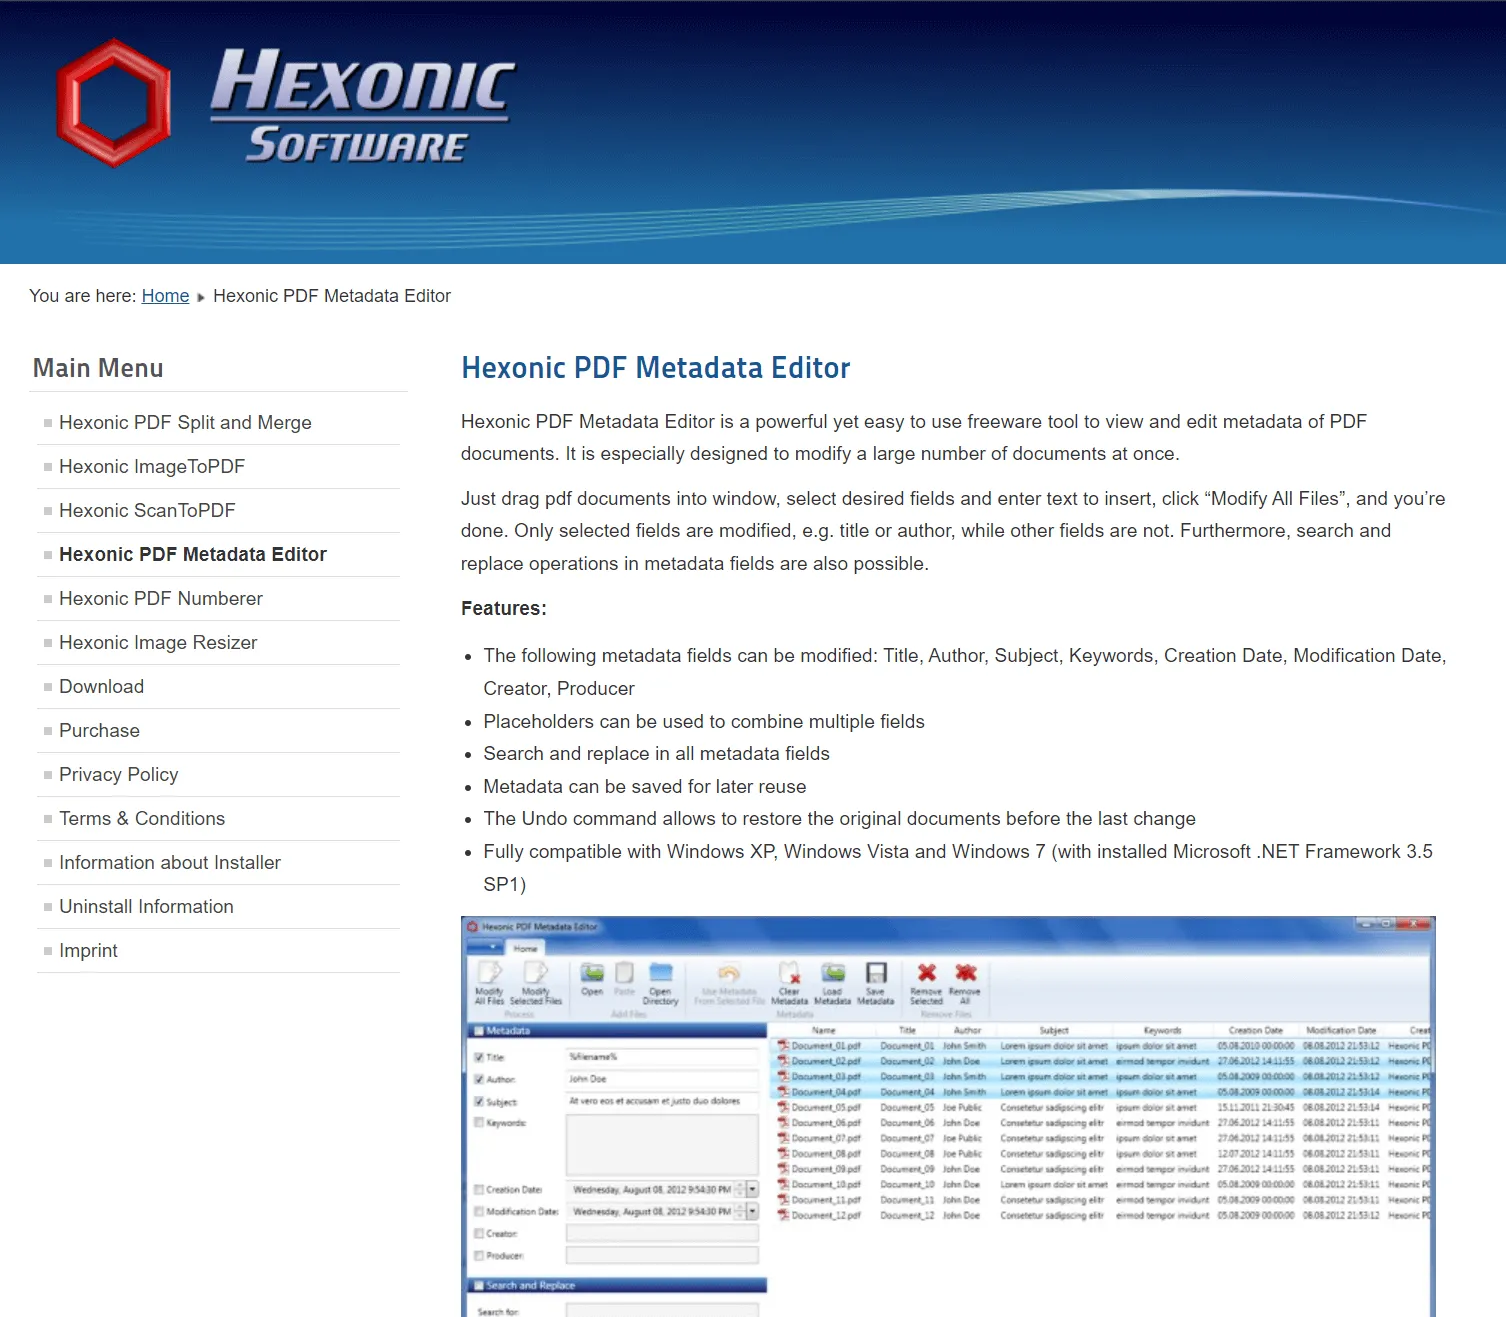 Hexonic PDF Metadata Editor